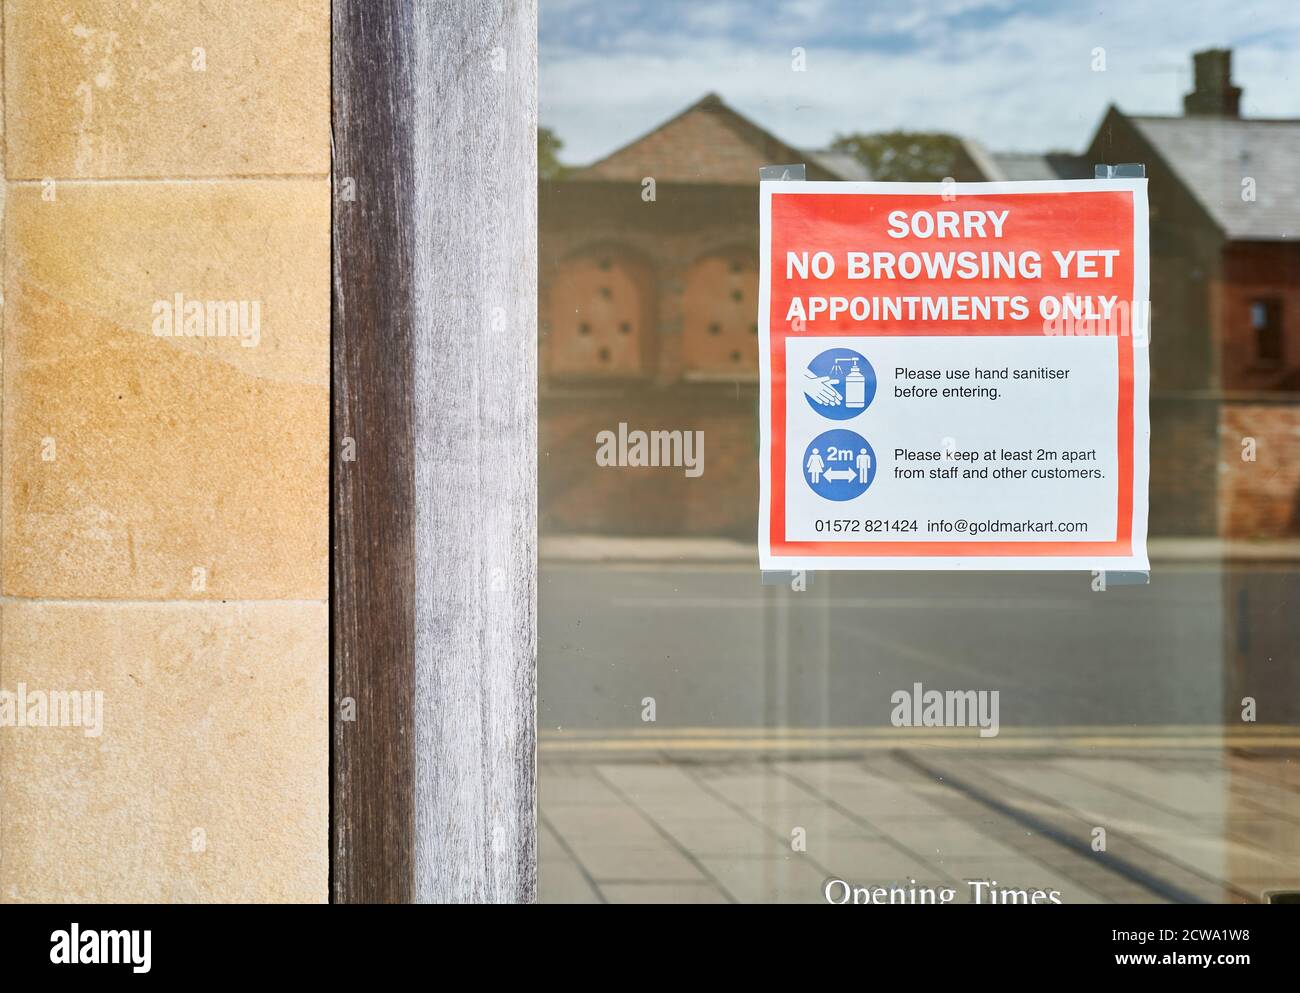 Un magasin dans la ville marchande d'Uppingham, Rutland, Angleterre, ouvert uniquement aux rendez-vous pendant l'épidémie de coronavirus, septembre 2020. Banque D'Images